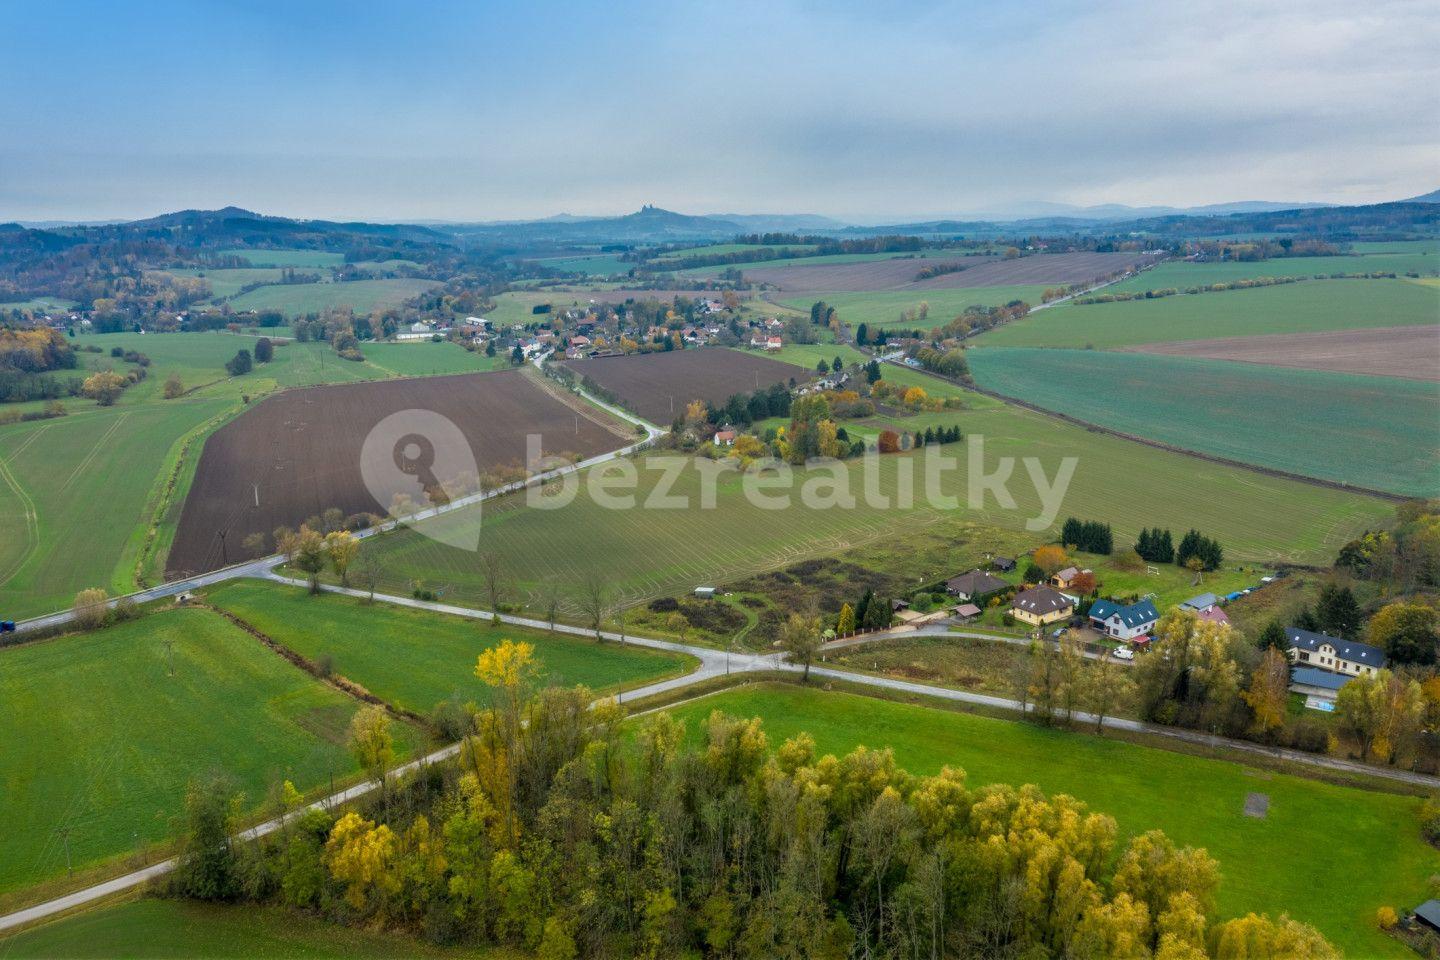 Prodej pozemku 1.219 m², Podůlší, Královéhradecký kraj